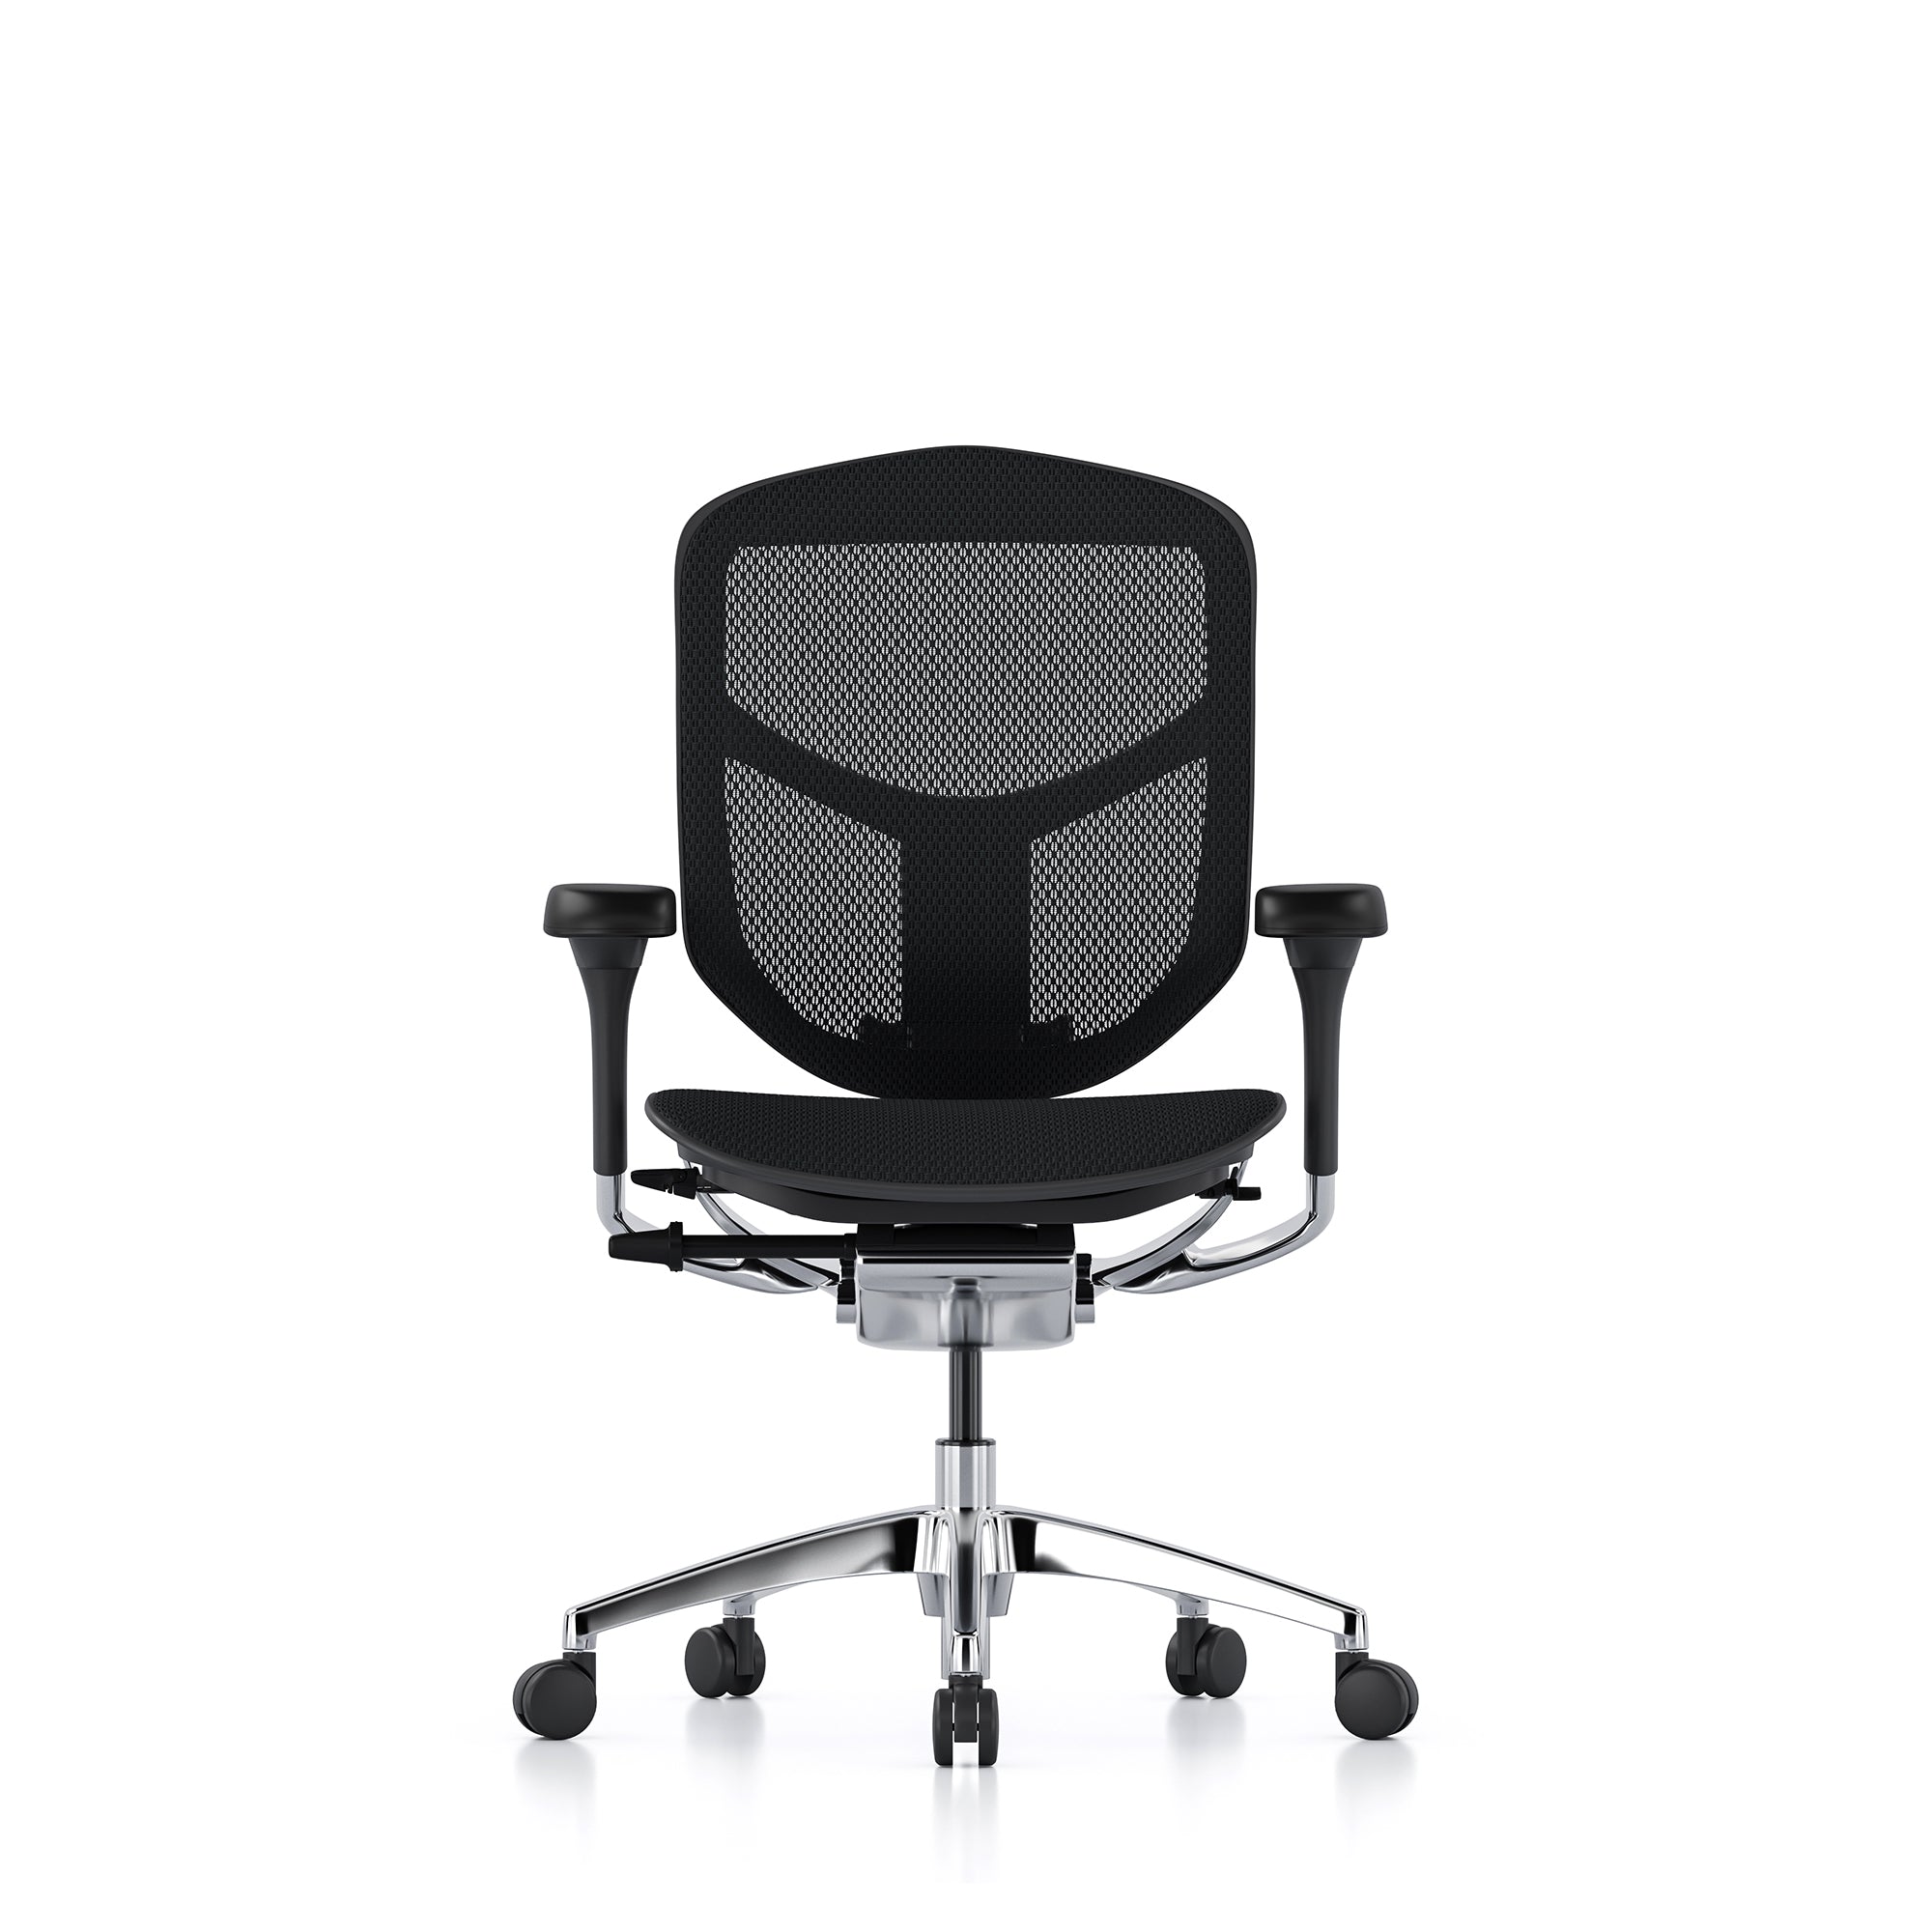 Ergohuman office chairs | Full range of ergonomic office chairs 